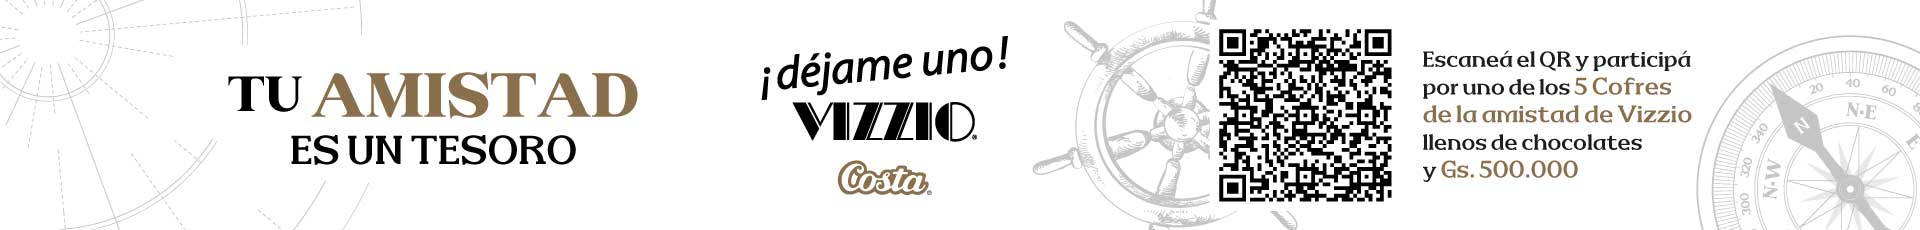 https://www.casarica.com.py/productos?q=vizzio&post_type=product&utm_source=web&utm_medium=banner&utm_campaign=vizzio&utm_id=vizzio&utm_term=pt&utm_content=vizzio